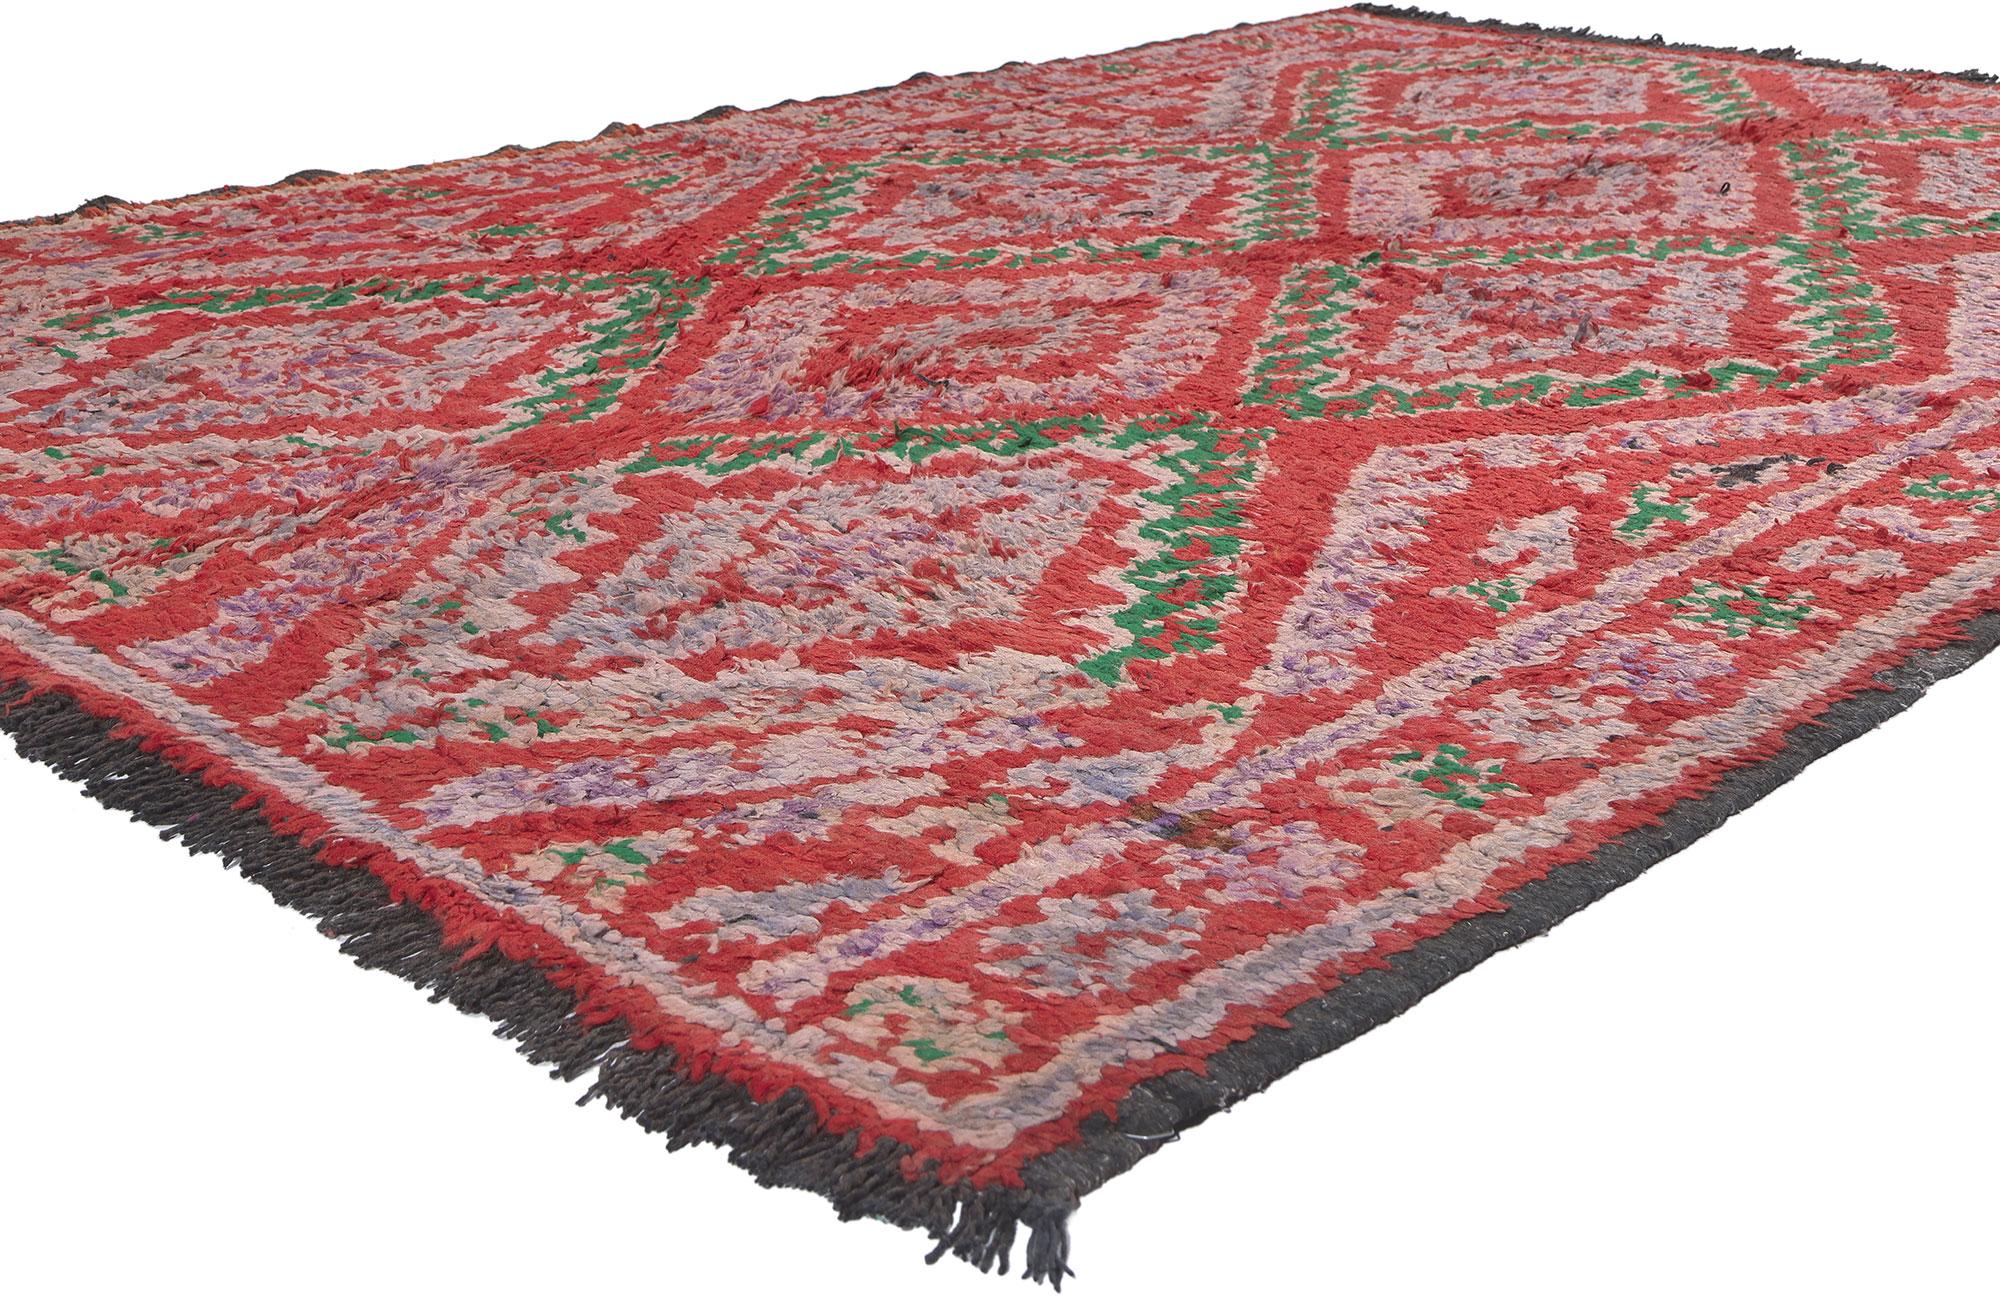 20208 Vintage Rot Talsint Marokkanischer Teppich, 05'10 X 08'04. Dieser handgeknüpfte marokkanische Talsint-Teppich aus Wolle ist nicht nur ein Bodenbelag, sondern eine Symphonie von Symbolen und Bedeutungen, die zu einem fesselnden Meisterwerk